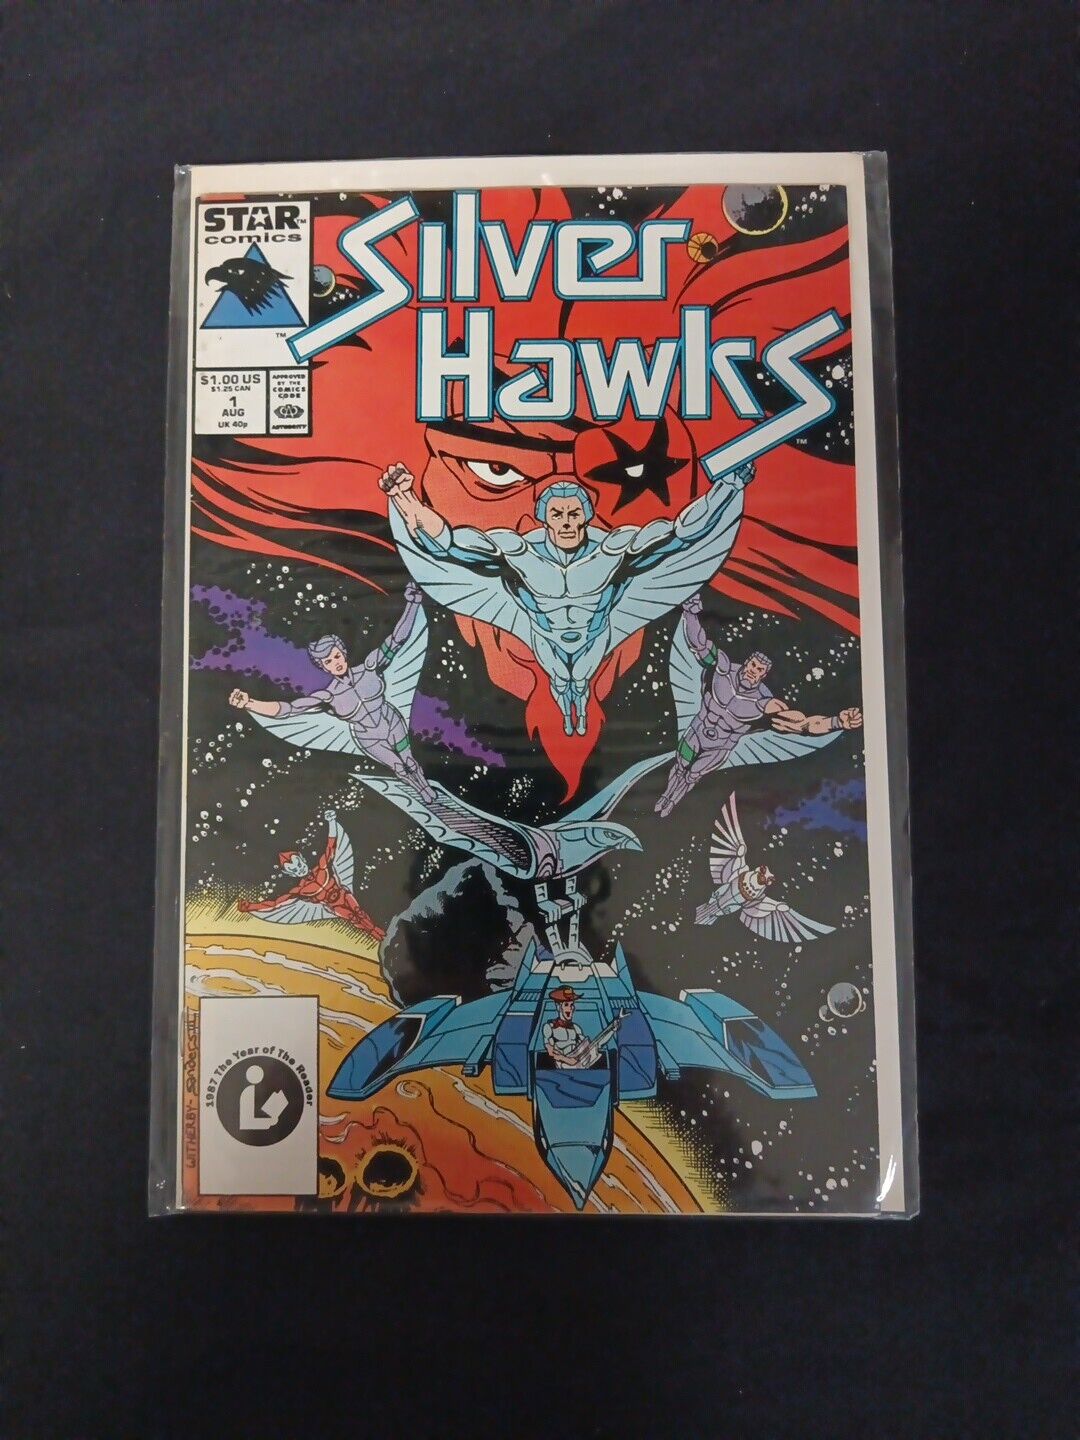 Silver Hawks Comic #1, Star Comics 1987, Fine Condition